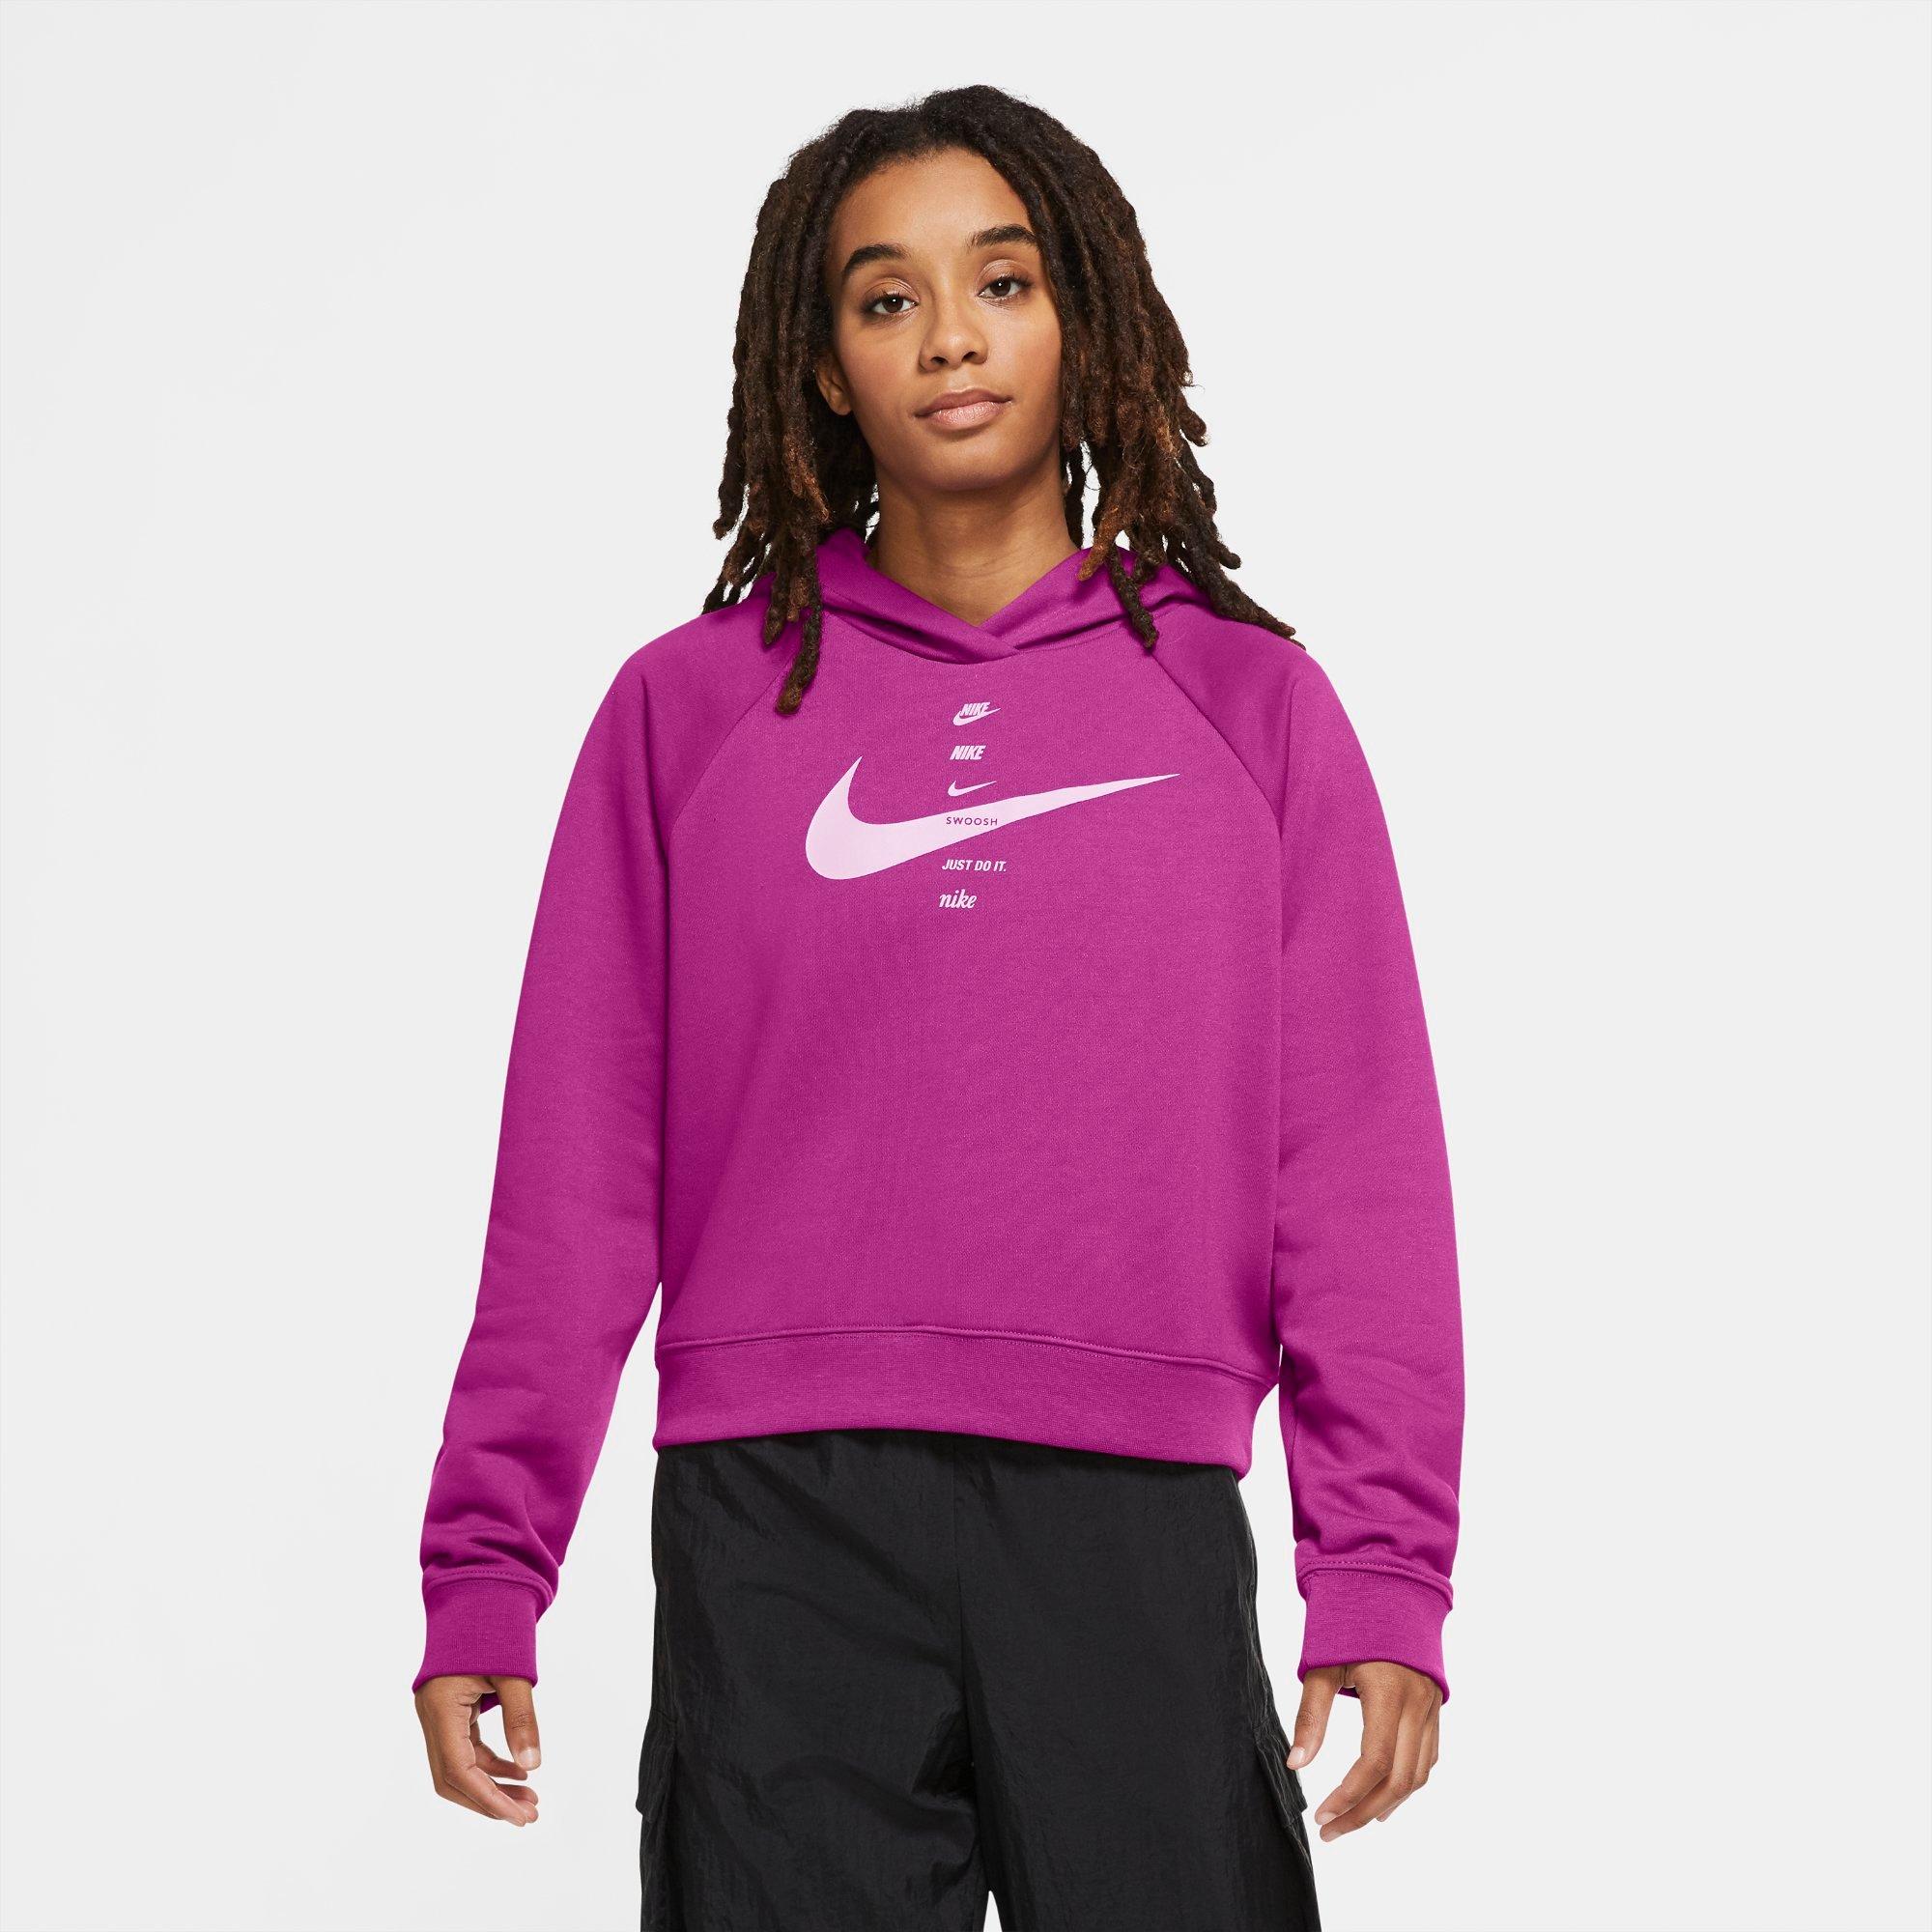 purple nike sweatsuit womens